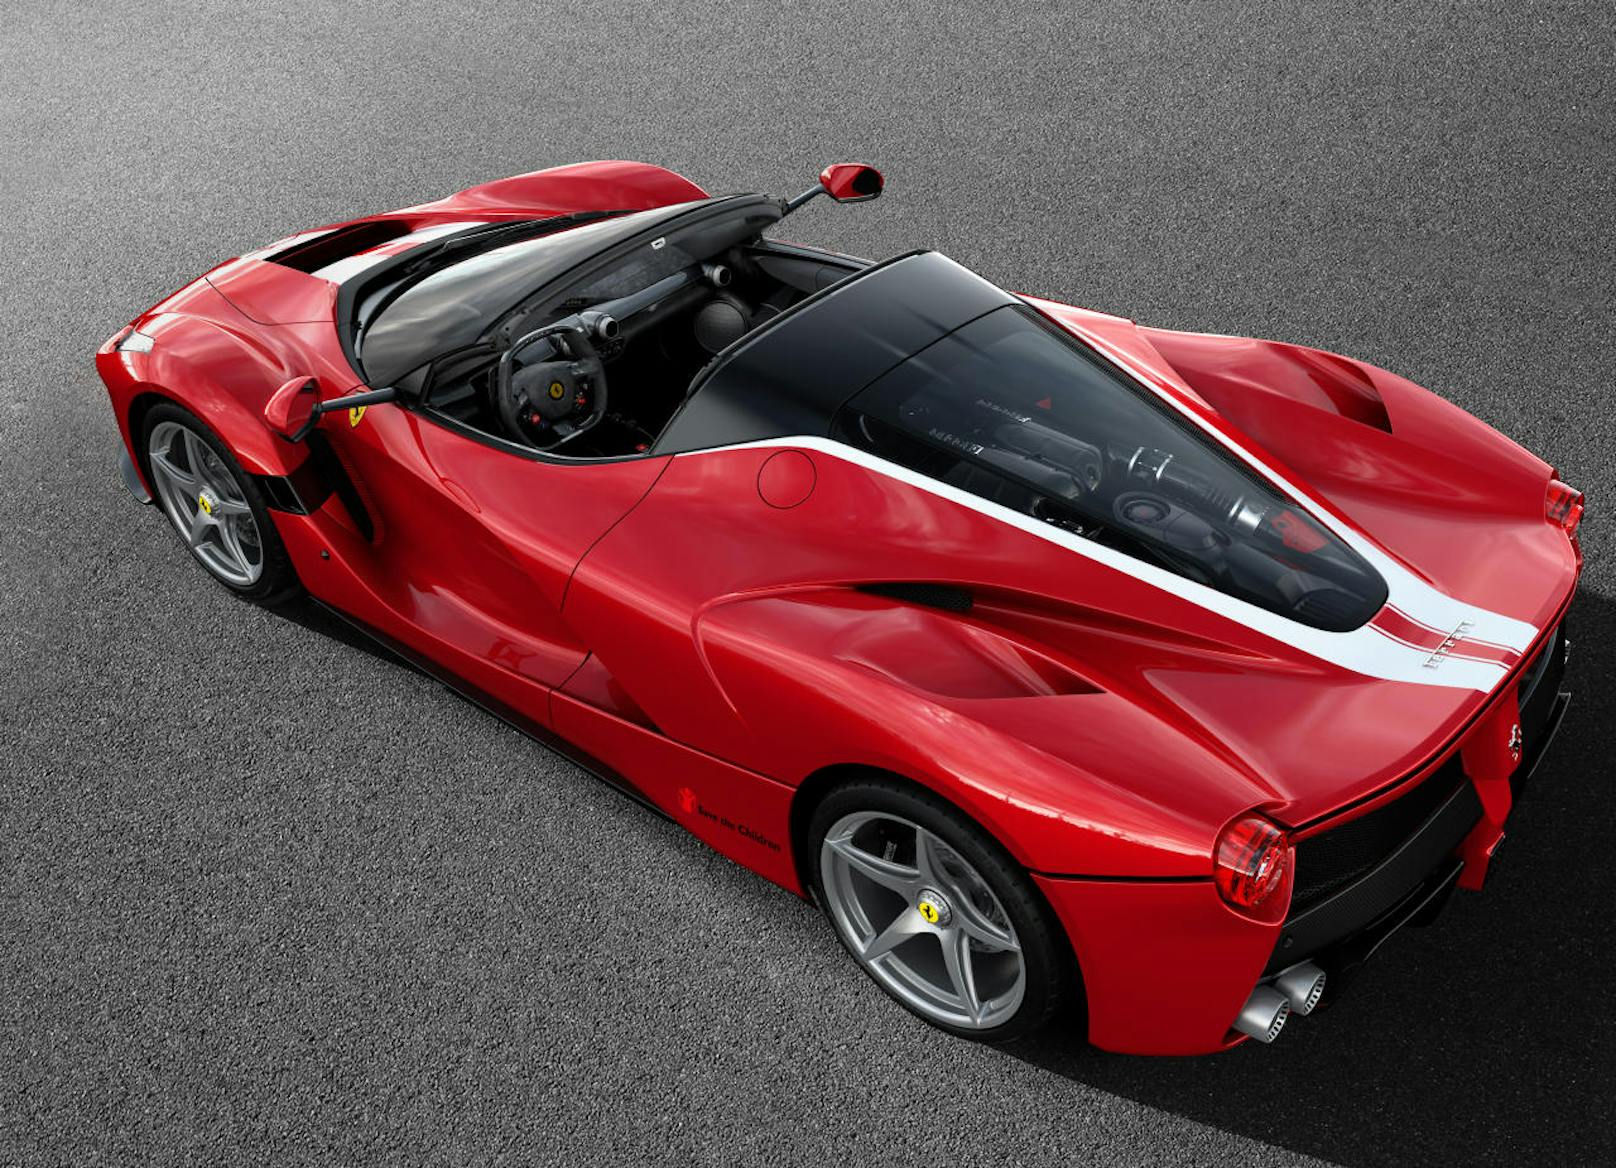 Das Geschoß schafft laut Ferrari "mehr als 350 km/h".